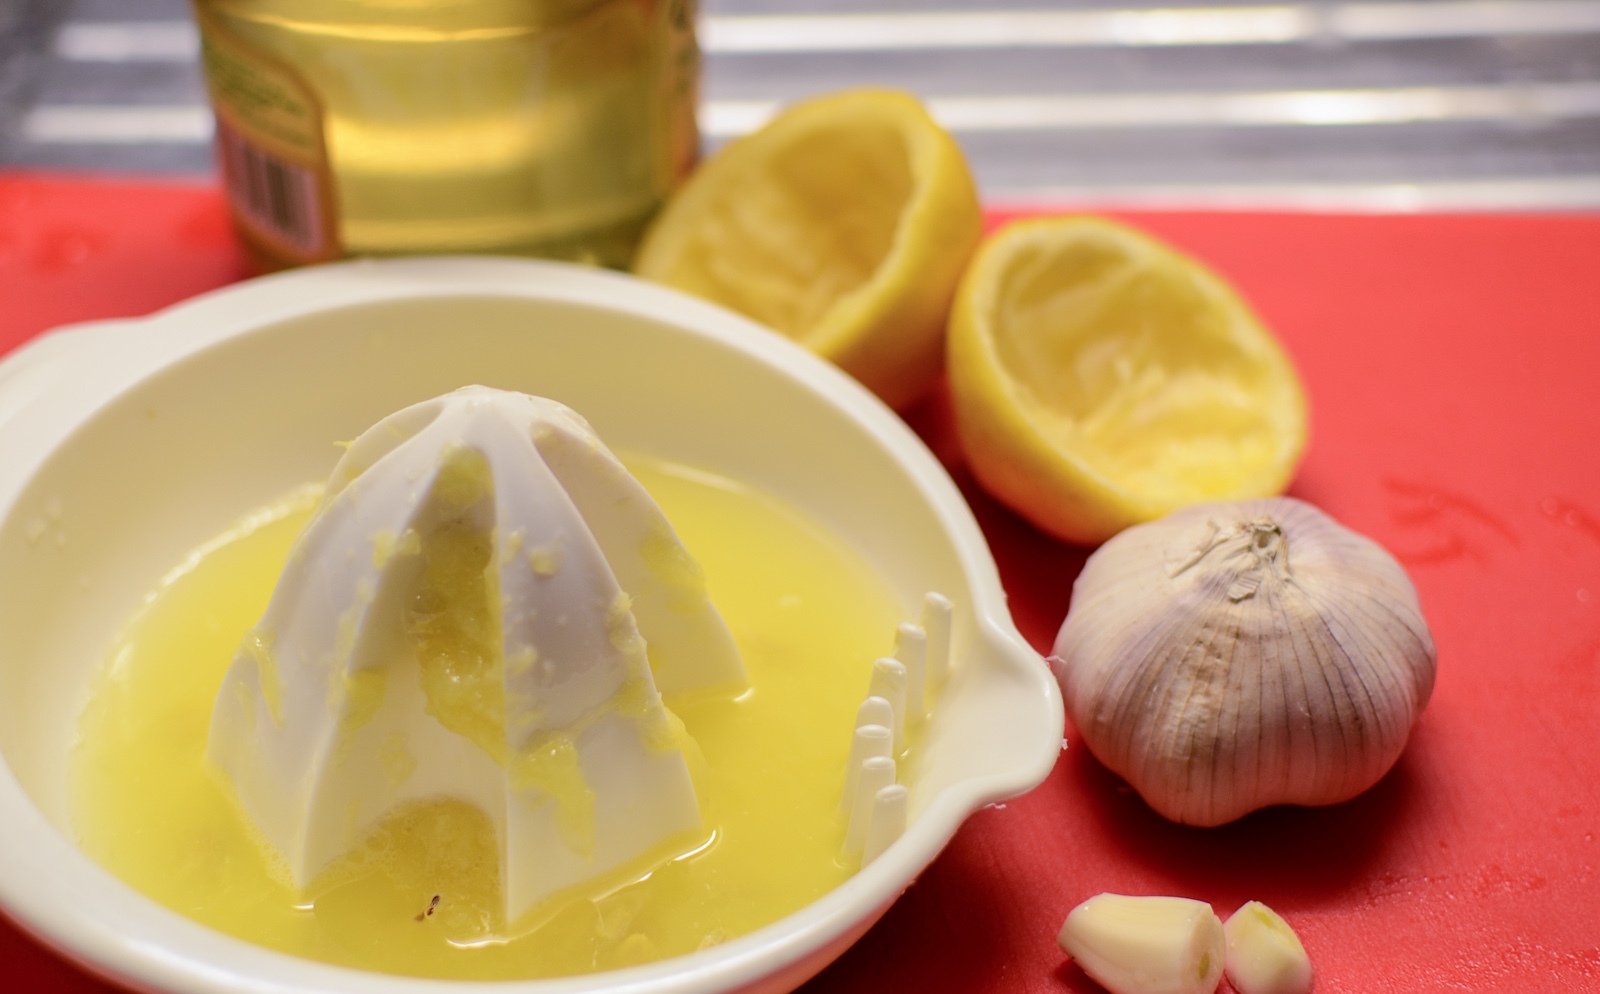 Δείτε τι «θαυματουργό» θα συμβεί στον οργανισμό σας πίνοντας μια κουταλιά λεμόνι με σκόρδο